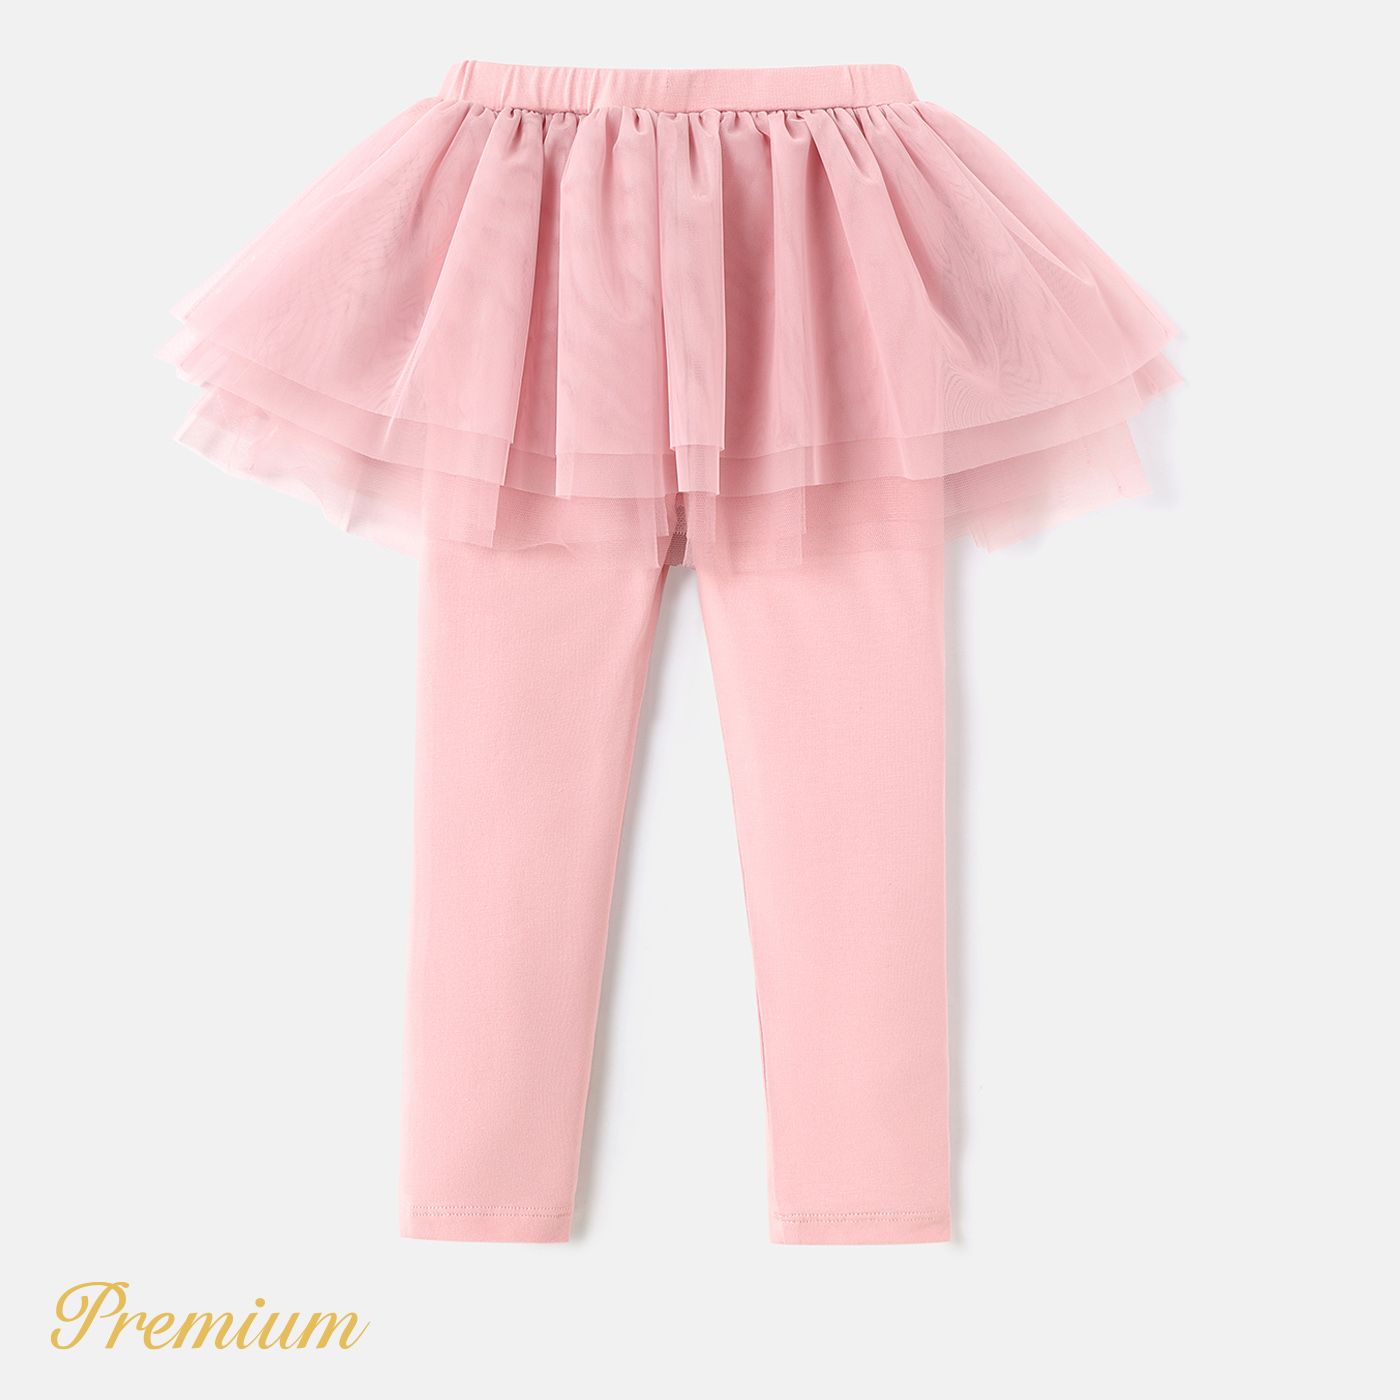 Toddler Girl Cotton Pink Layered Mesh Skirted Leggings Pants